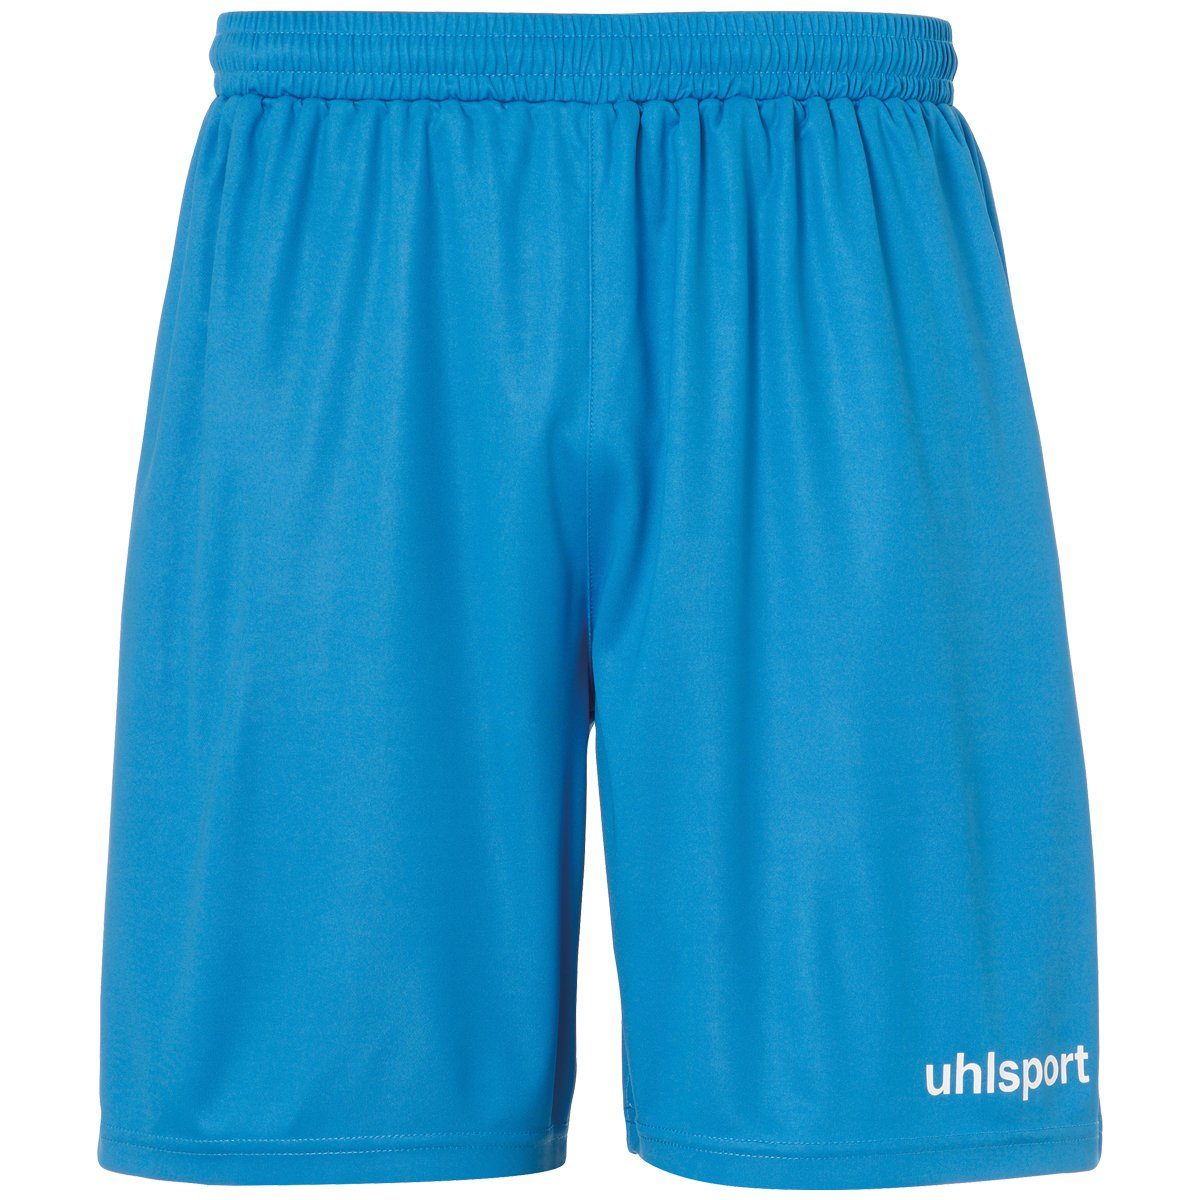 uhlsport Shorts uhlsport Shorts cyan | Shorts